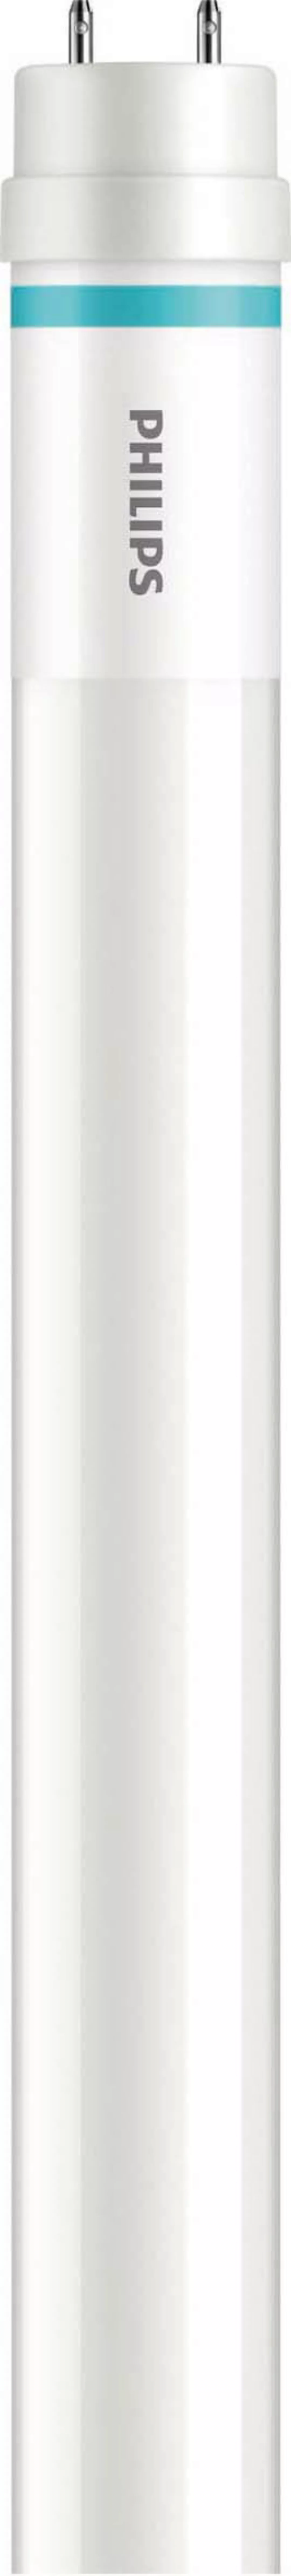 Philips Lighting LED-Tube T8 f. KVG/VVG G13, 840, 600mm MLEDtubeVLE#6468130 günstig online kaufen